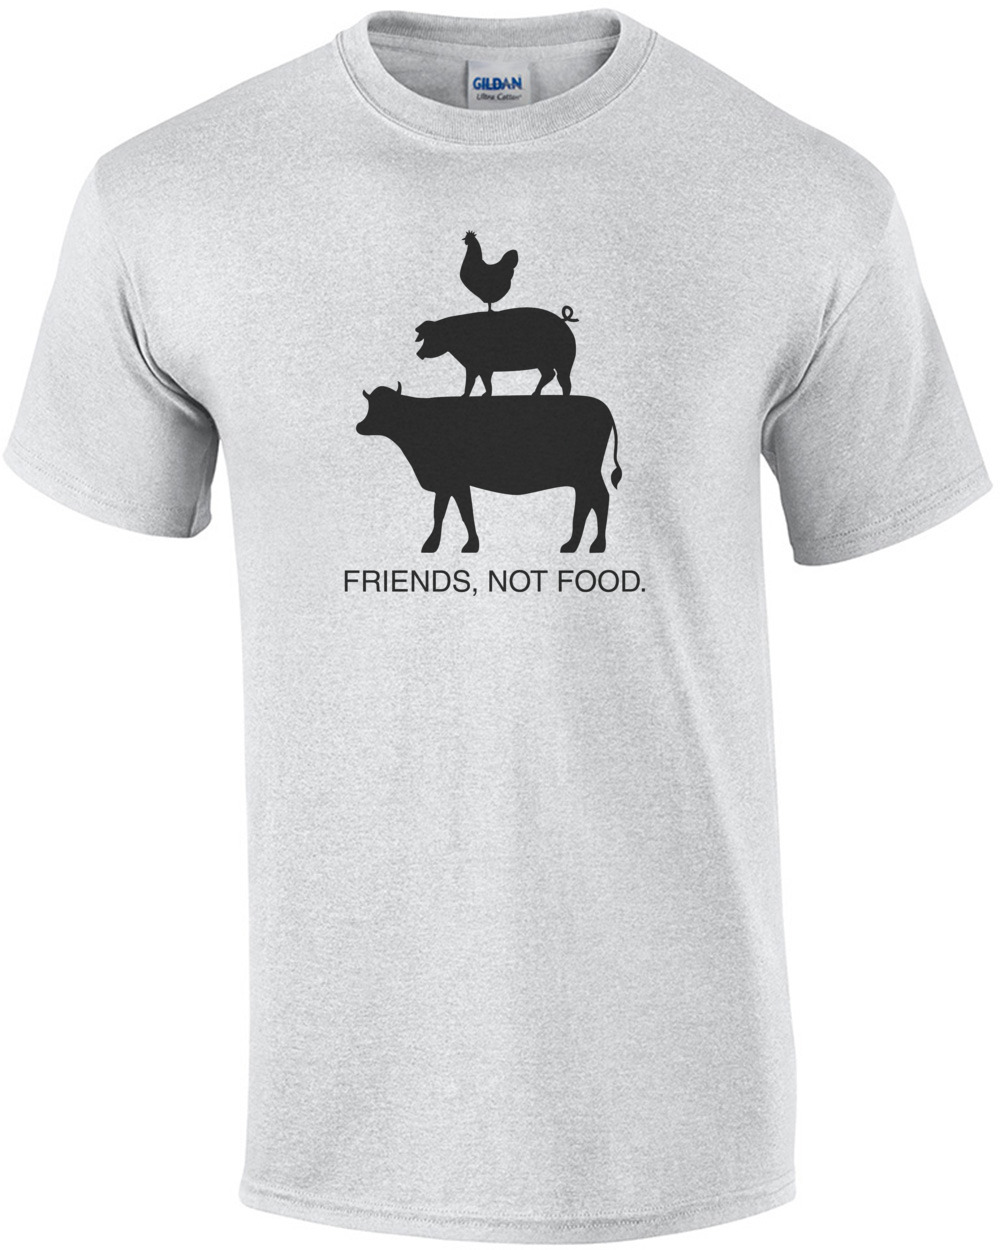 Friends, Not Food - Vegetarian T-Shirt